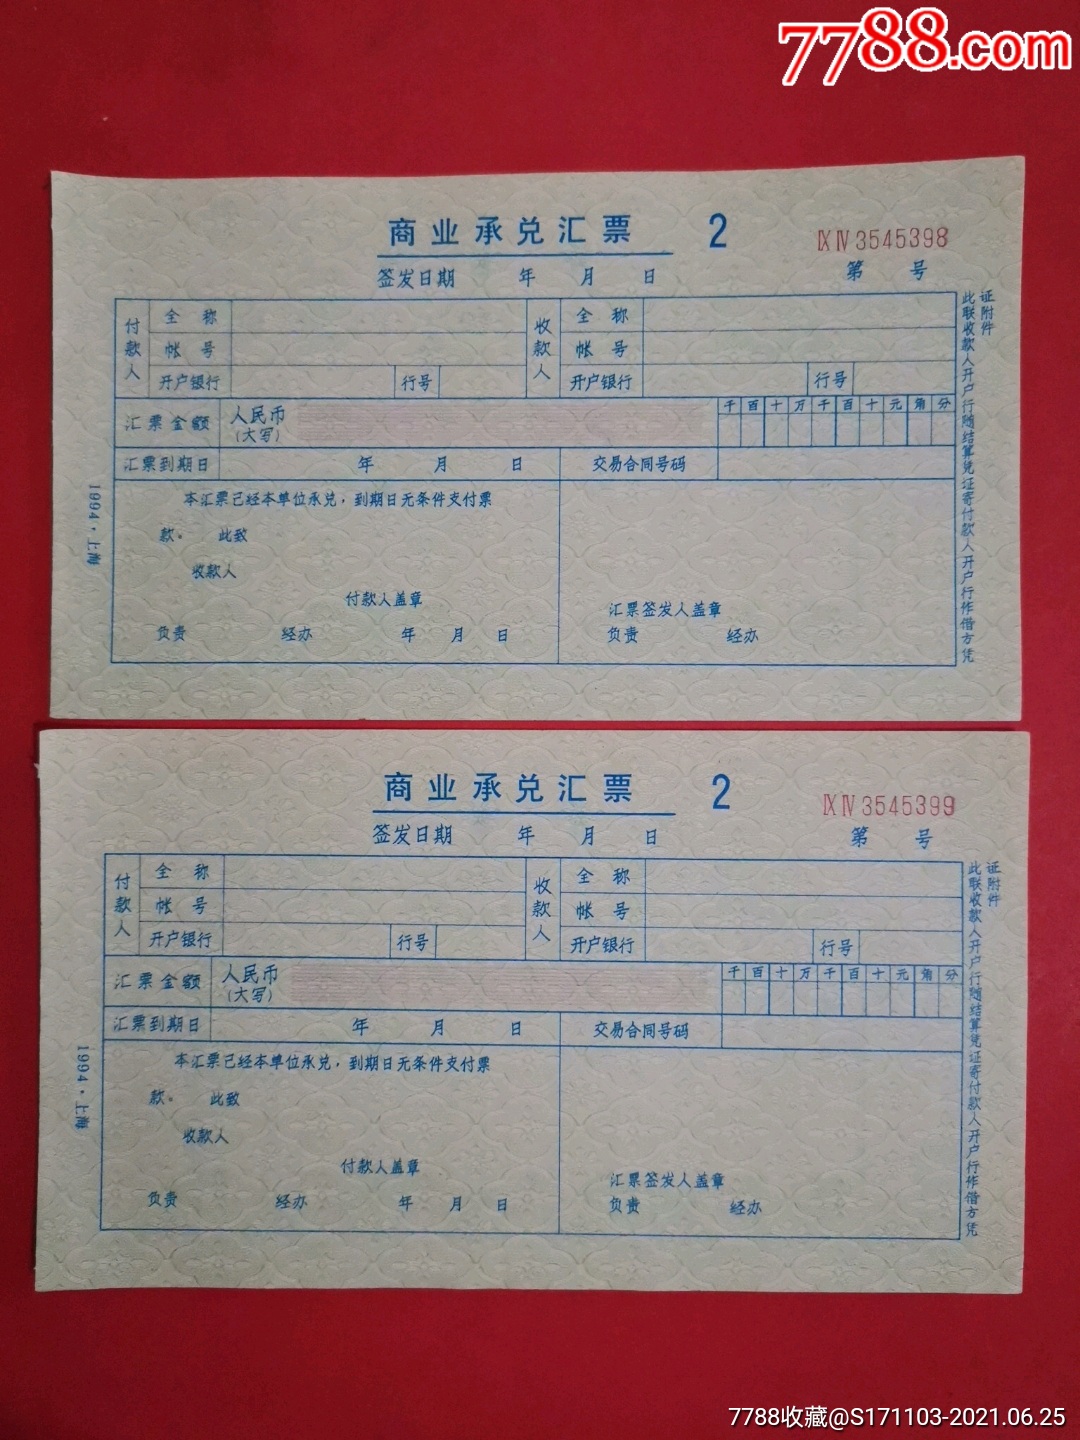 商业承兑汇票二枚中国人民银行徽志水印